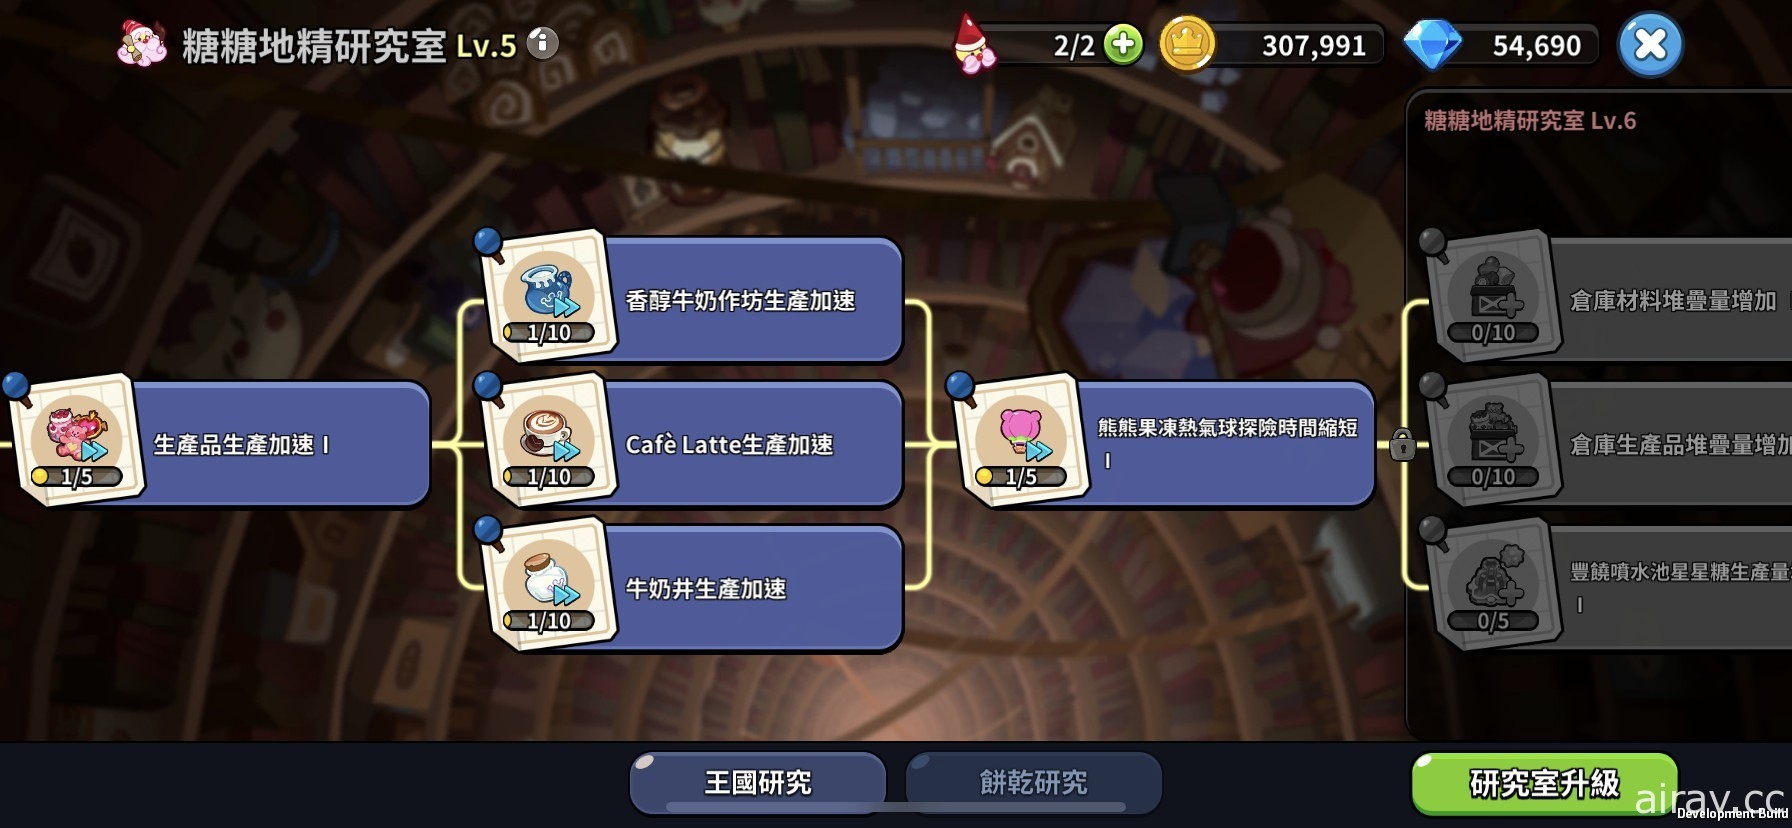 《姜饼人王国》推出限定改版活动 释出“紫丁香饼干”、饼干屋自选造型功能